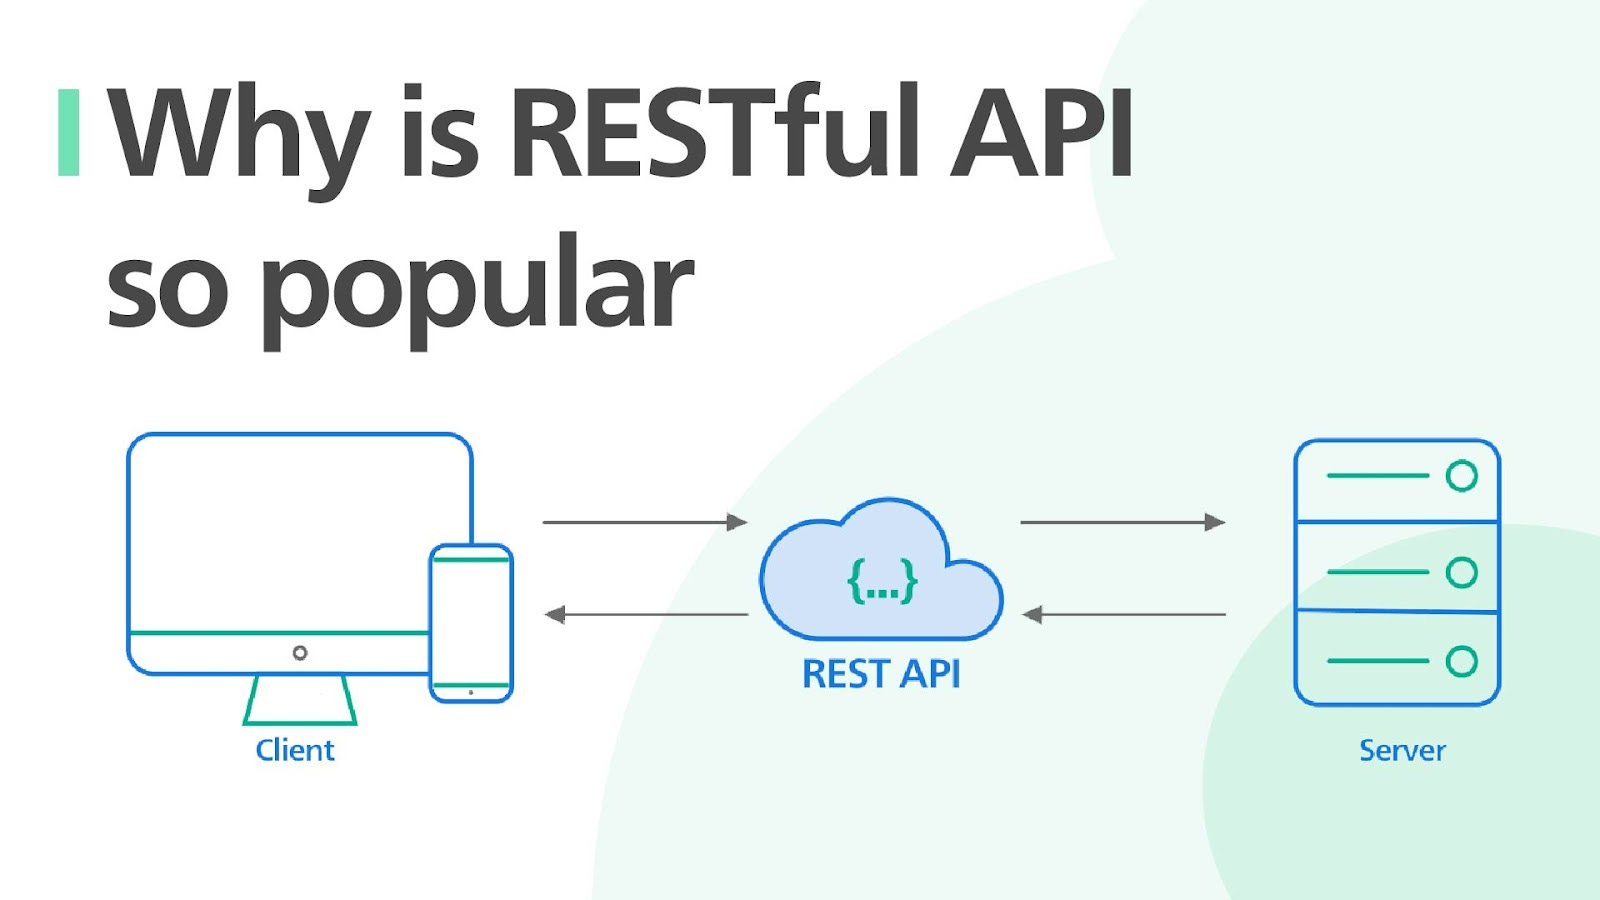 RESTful API là gì?